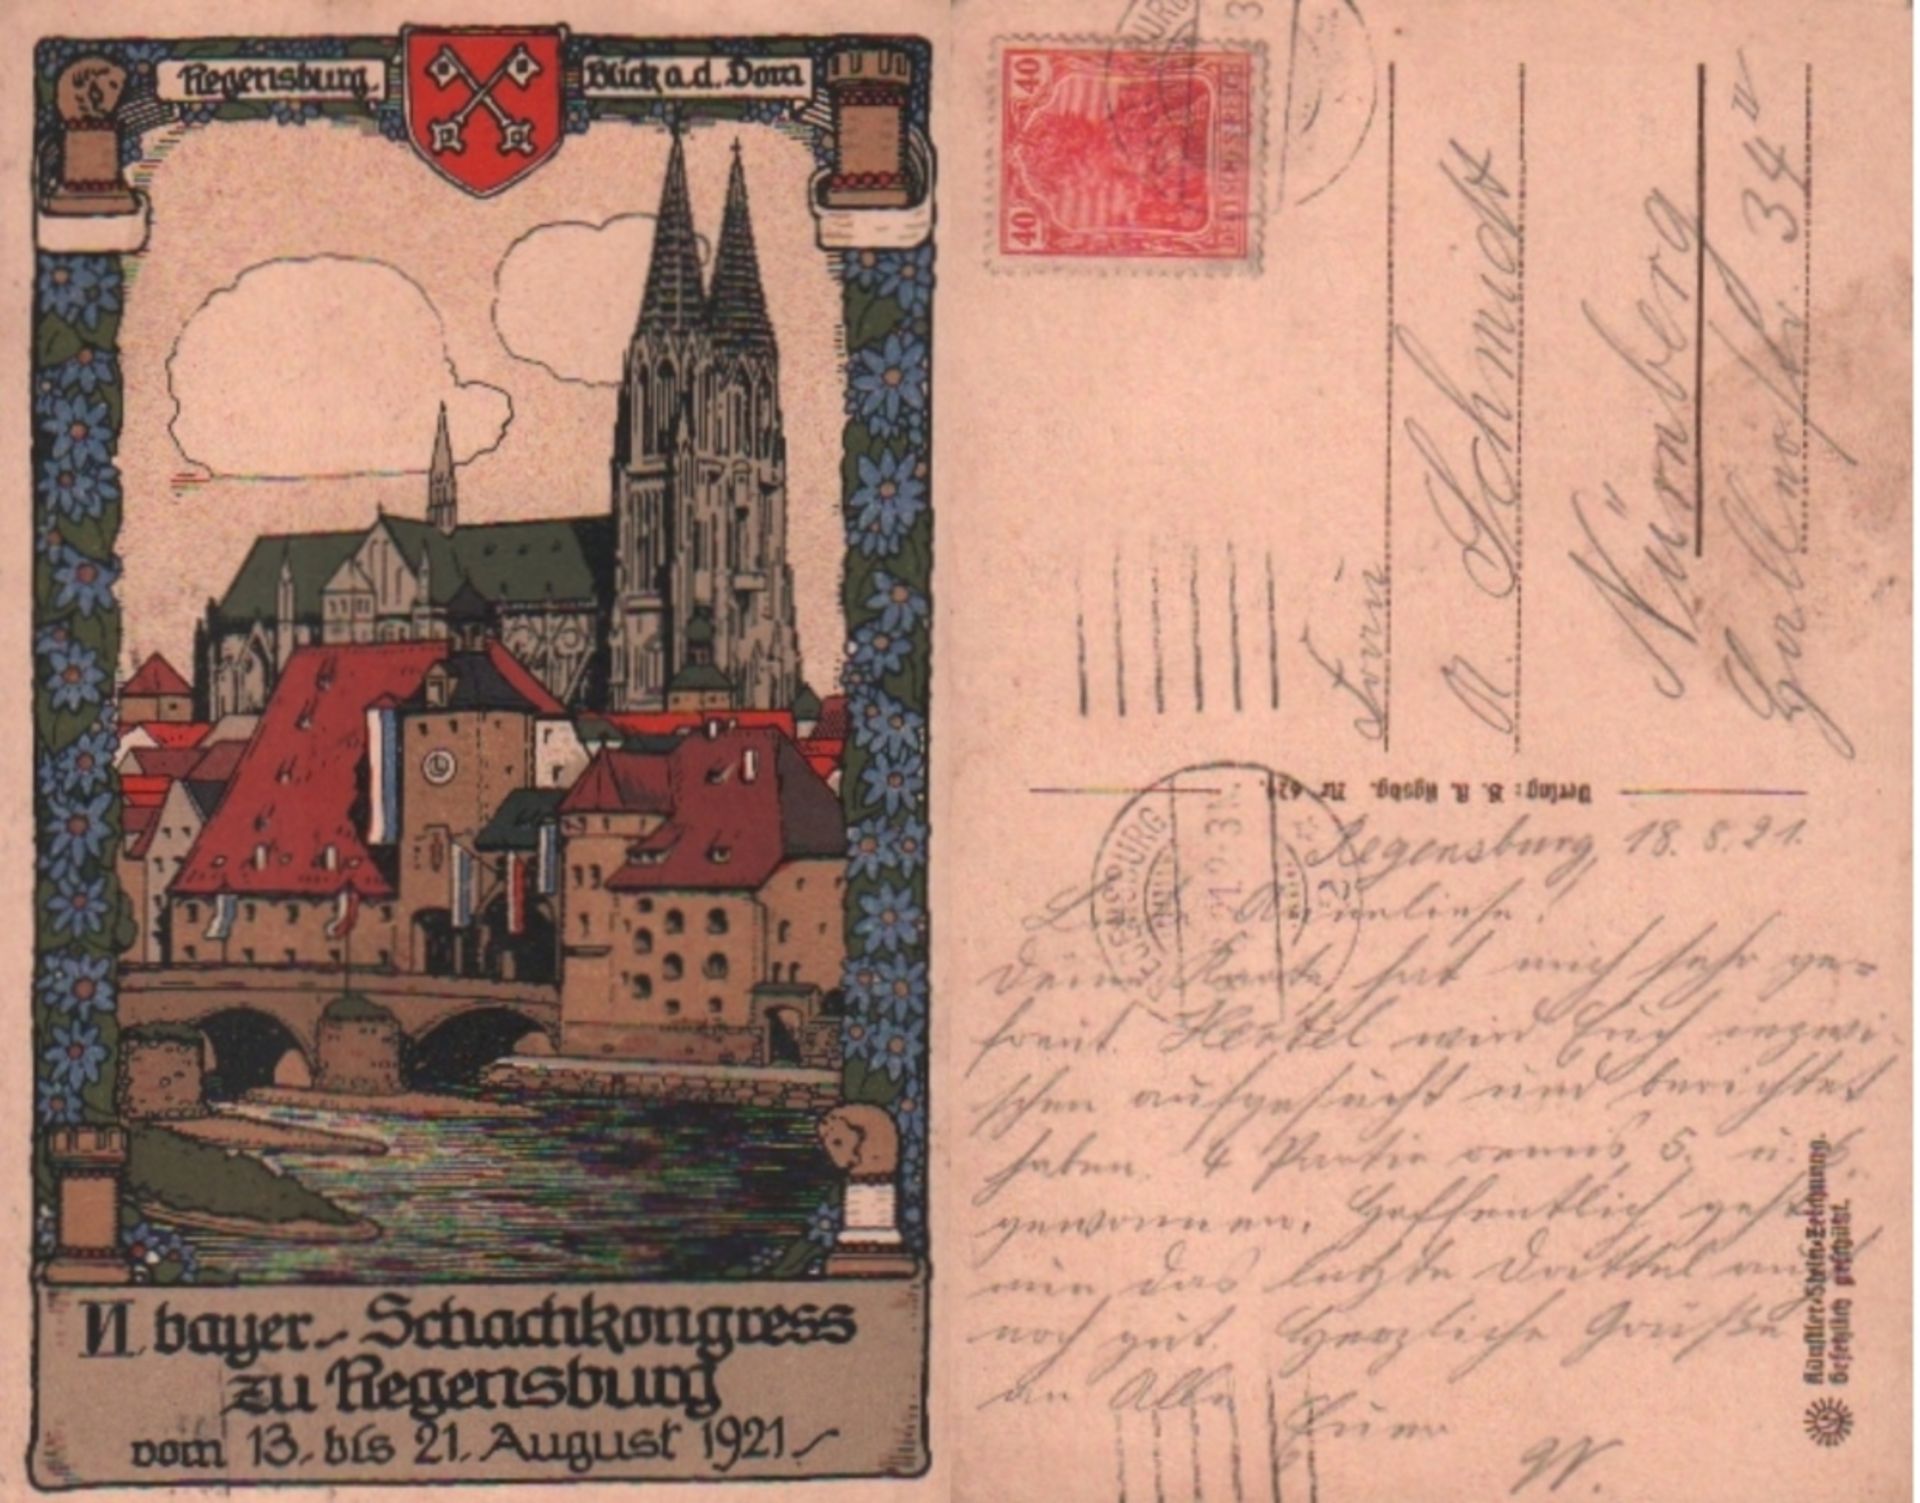 Postkarte. Regensburg 1921. Farbige, postalisch gelaufene Postkarte zum II. bayerischen